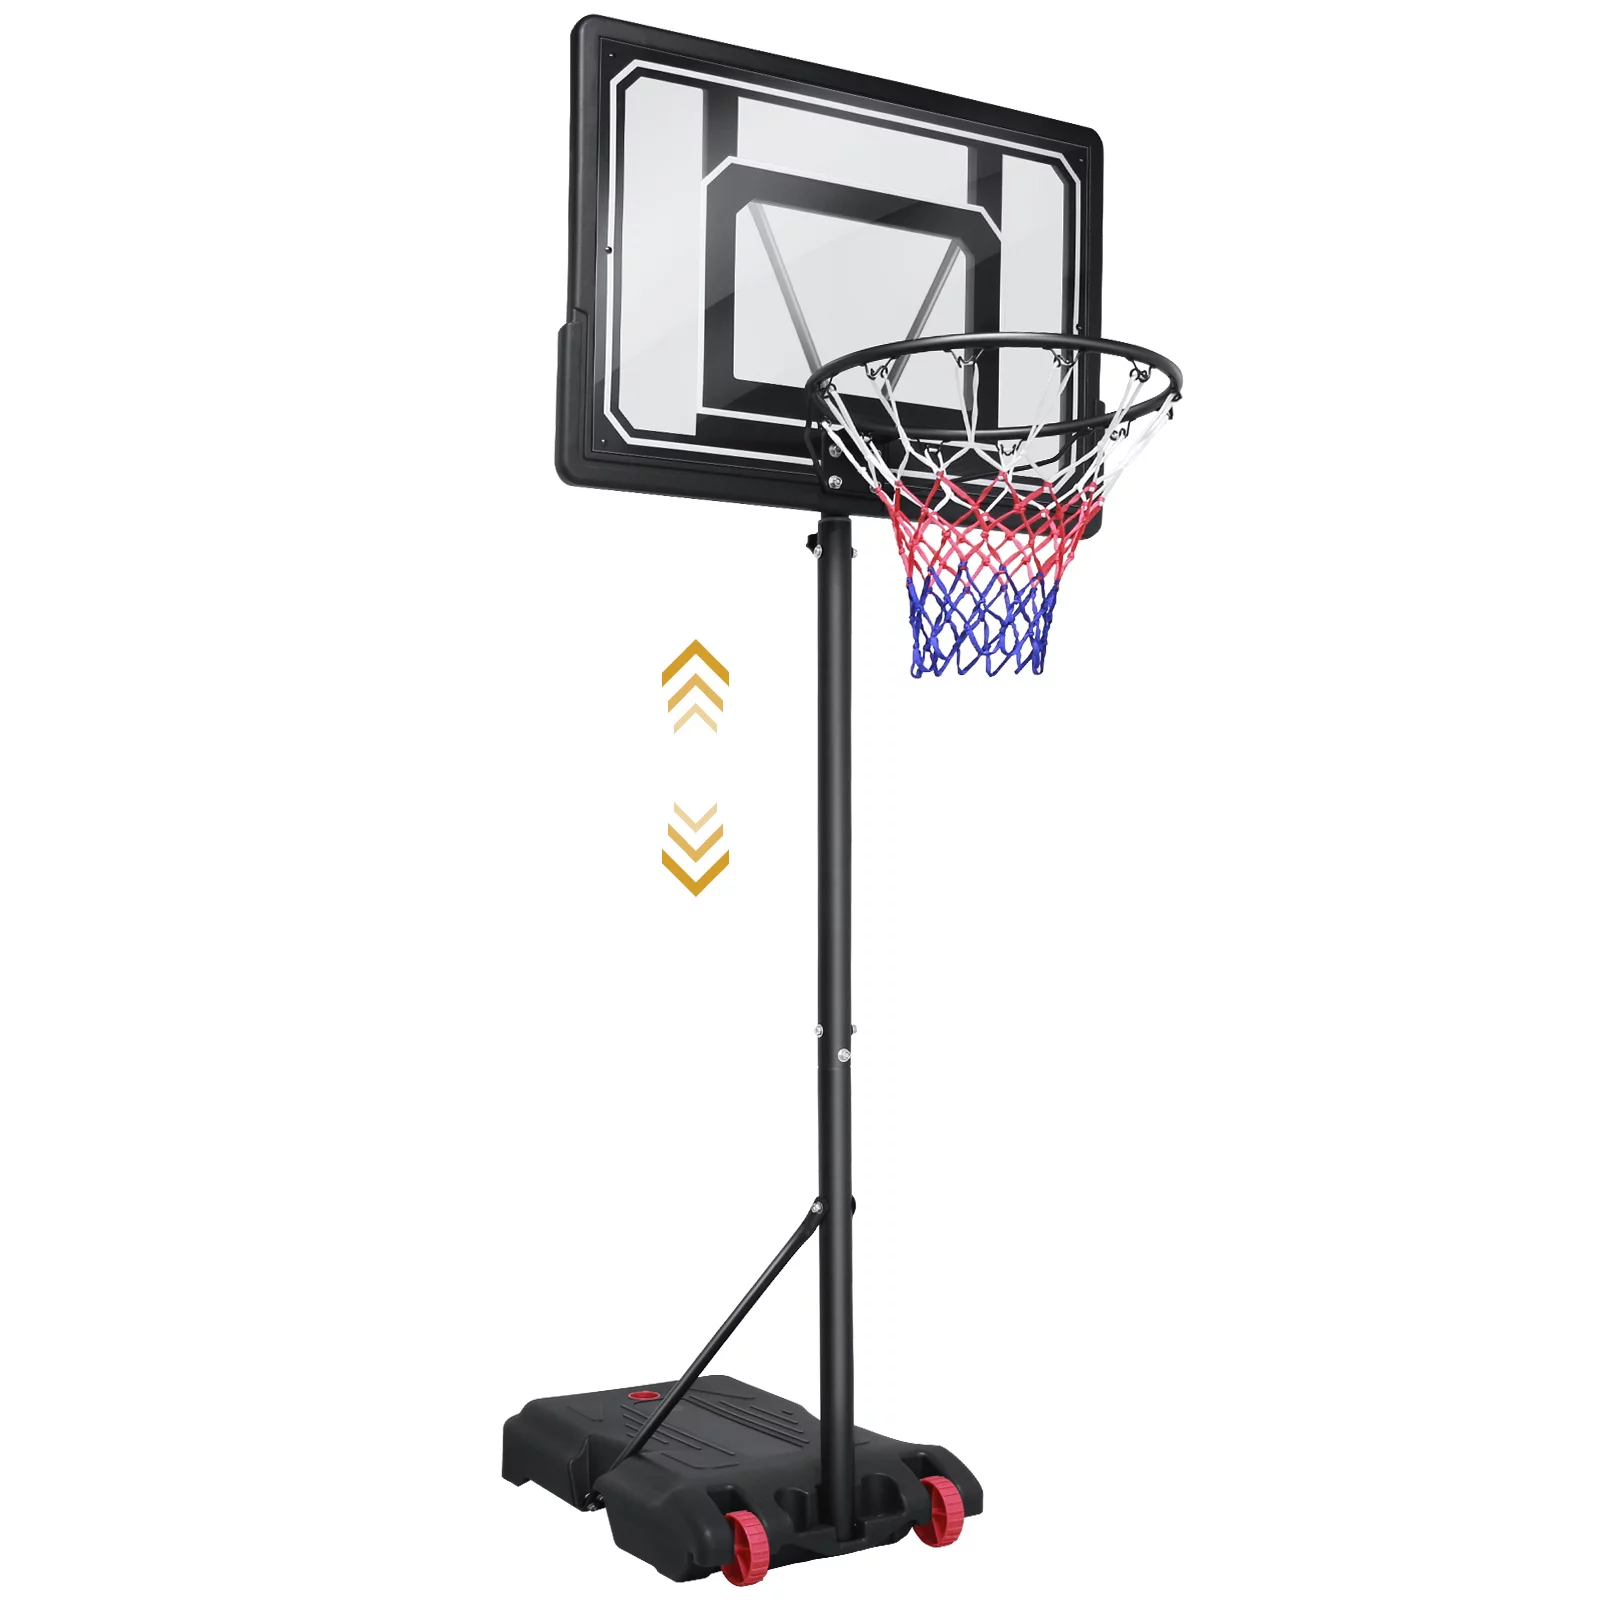 VIRNAZ 33 In. Portable Basketball Hoop & Goal for Outdoor Indoor Court 5 - 7 ft Height Adjustable